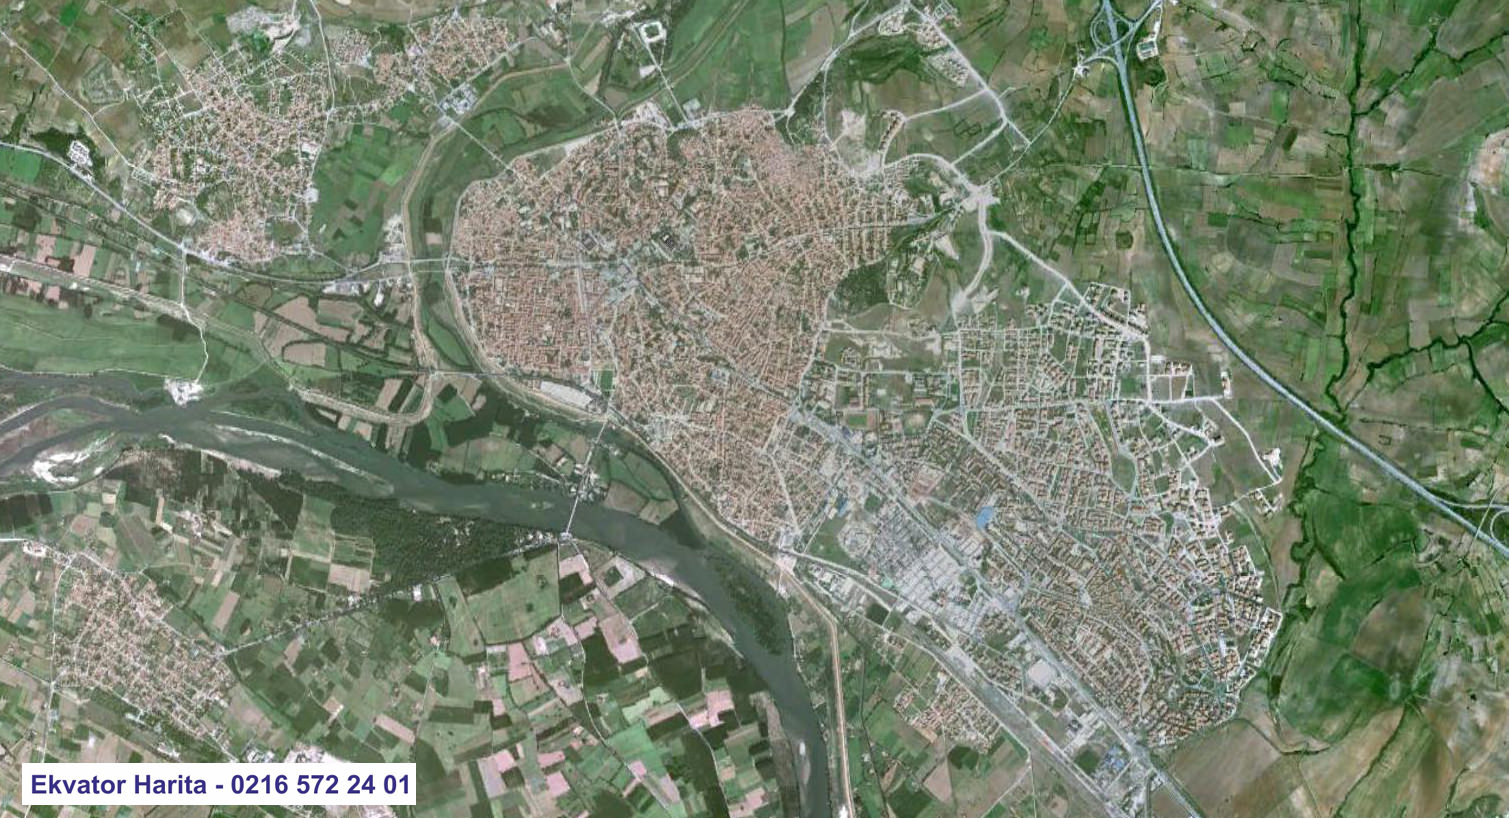 Edirne Uydu Haritası Örnek Fotoğrafı